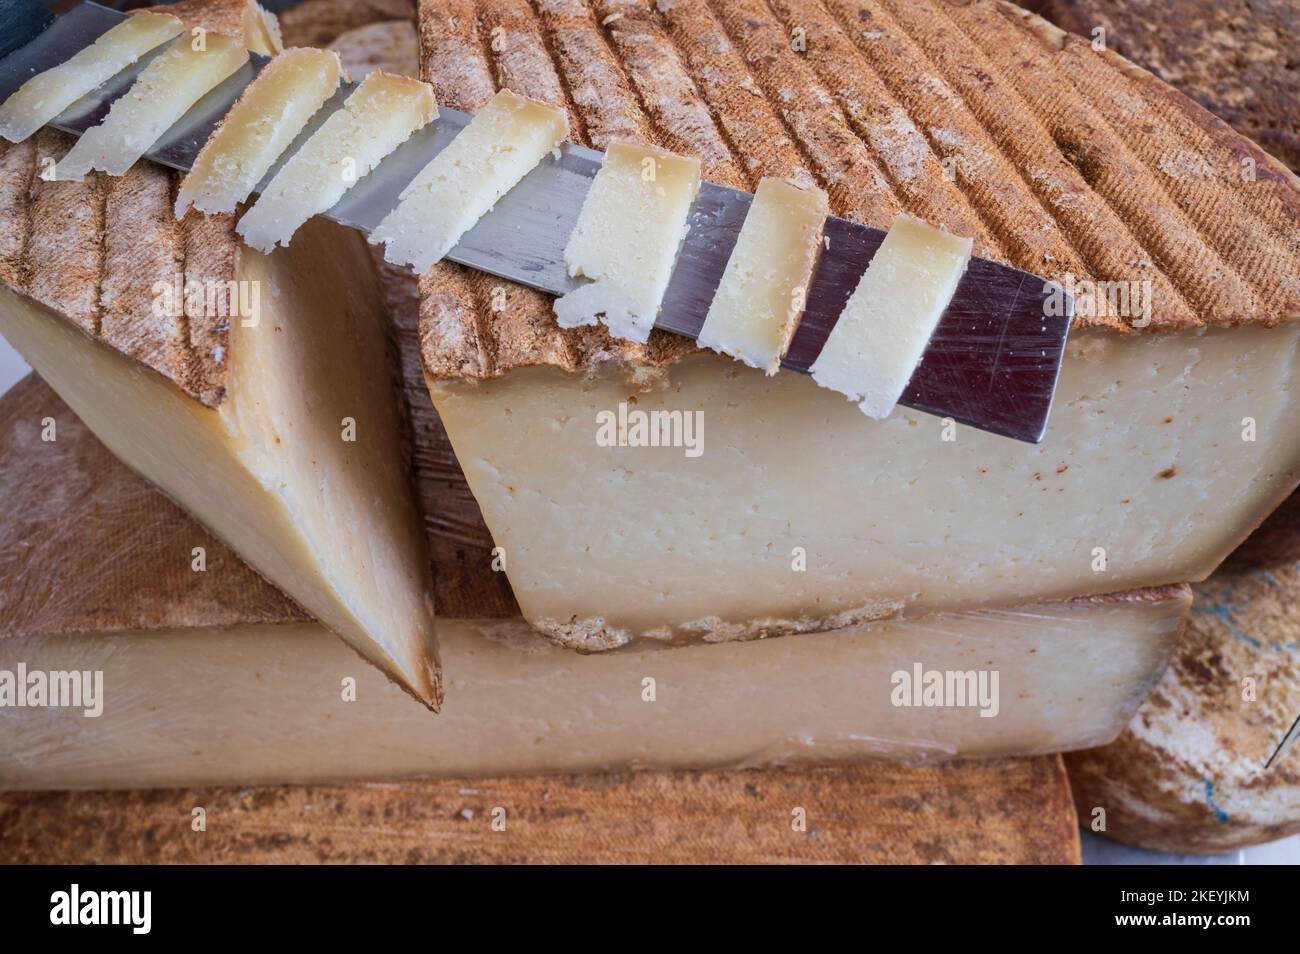 L’Ossau-Iraty, un fromage de lait de brebis pressé non cuit traditionnel, est la fierté des régions du pays Basque et du Béarn en France. Banque D'Images